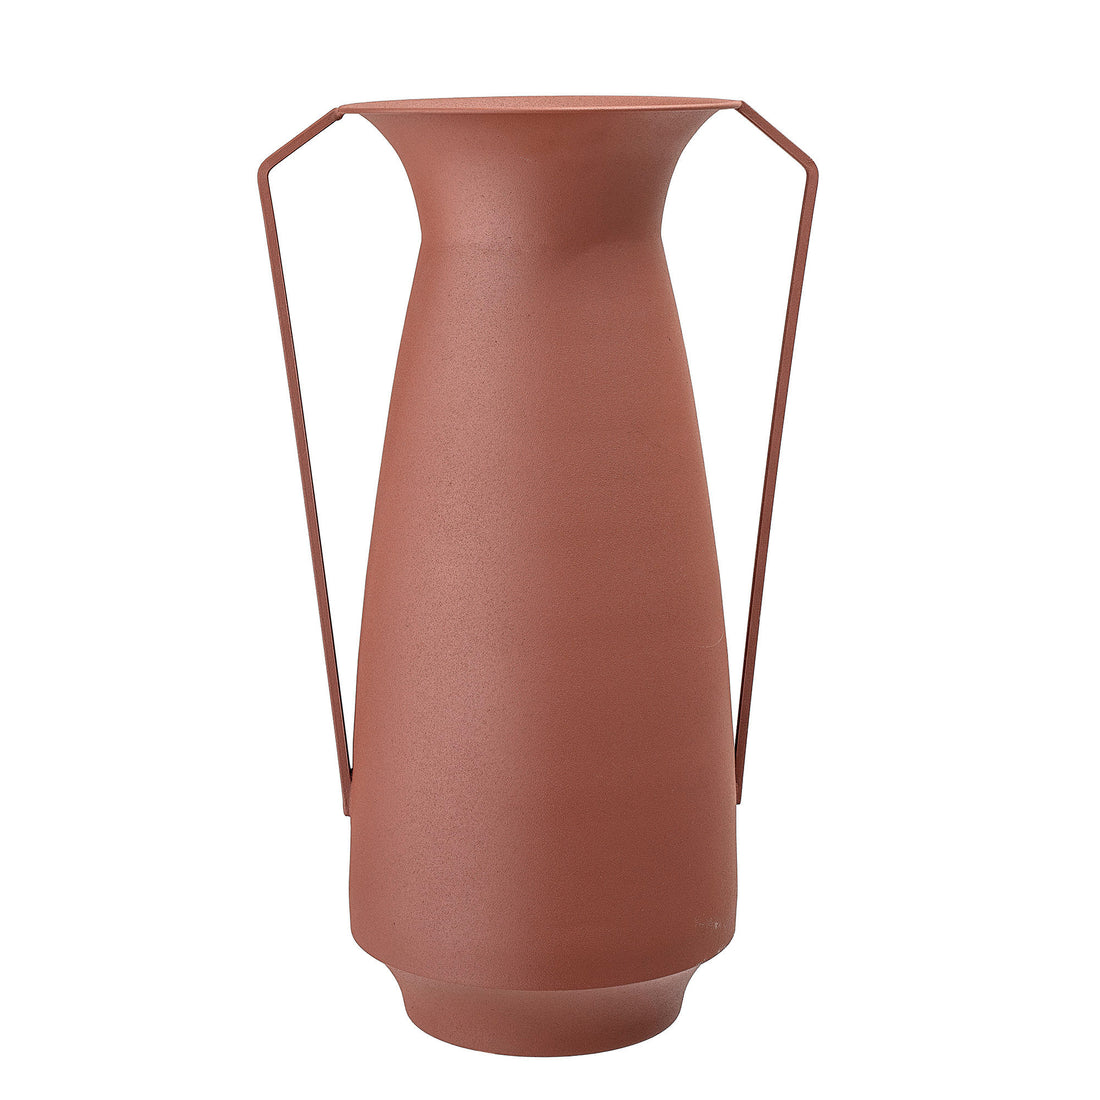 Bloomingville Rikkegro Vase, Brown, Metal